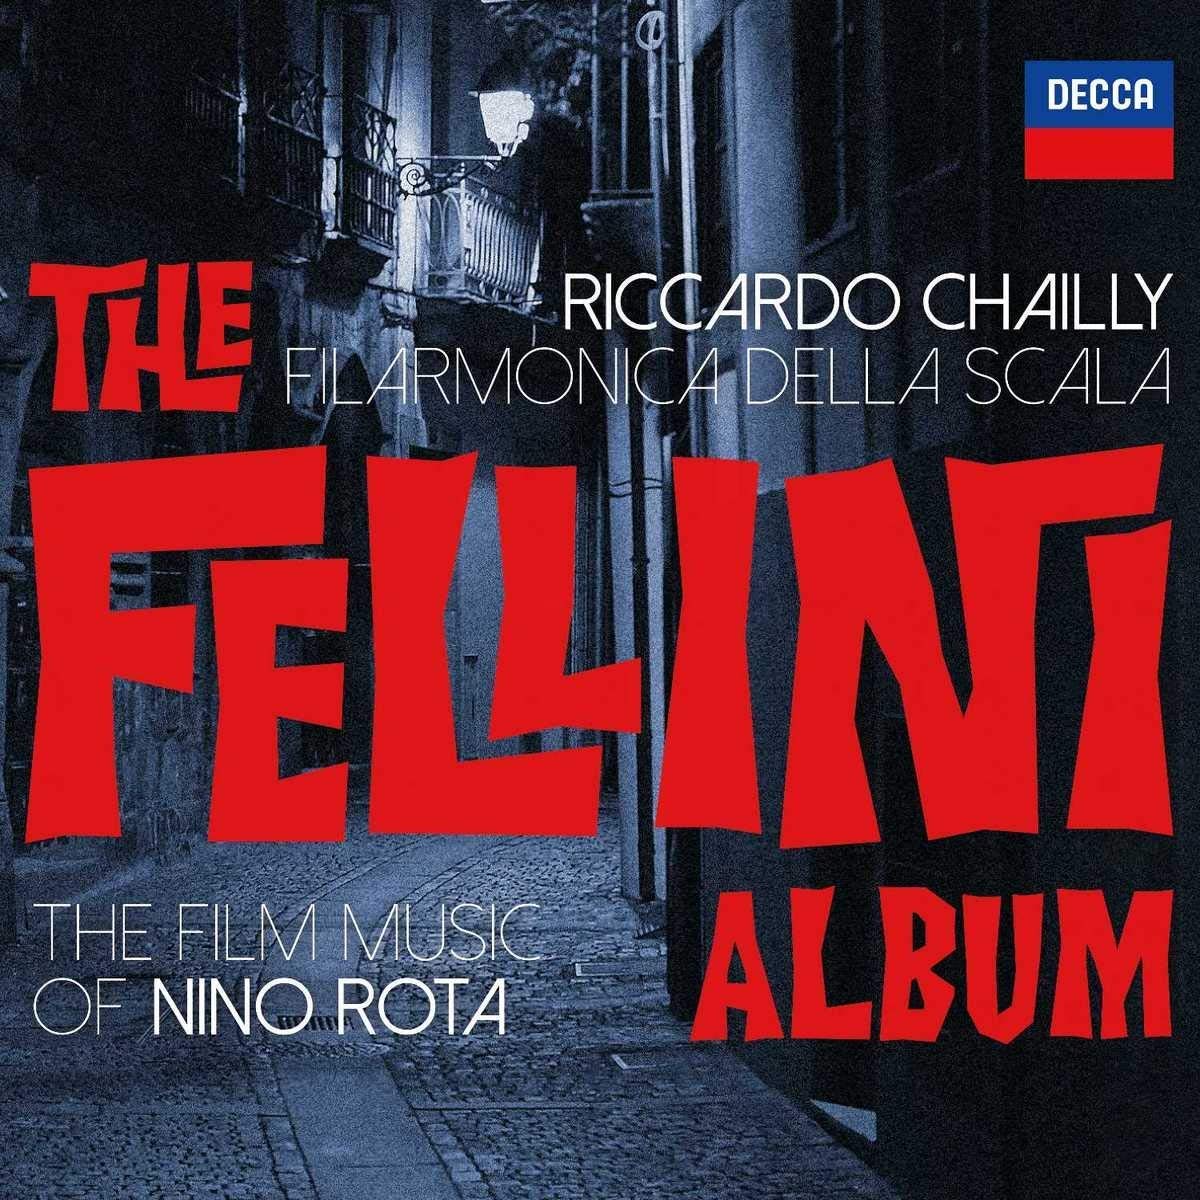 Fellini album